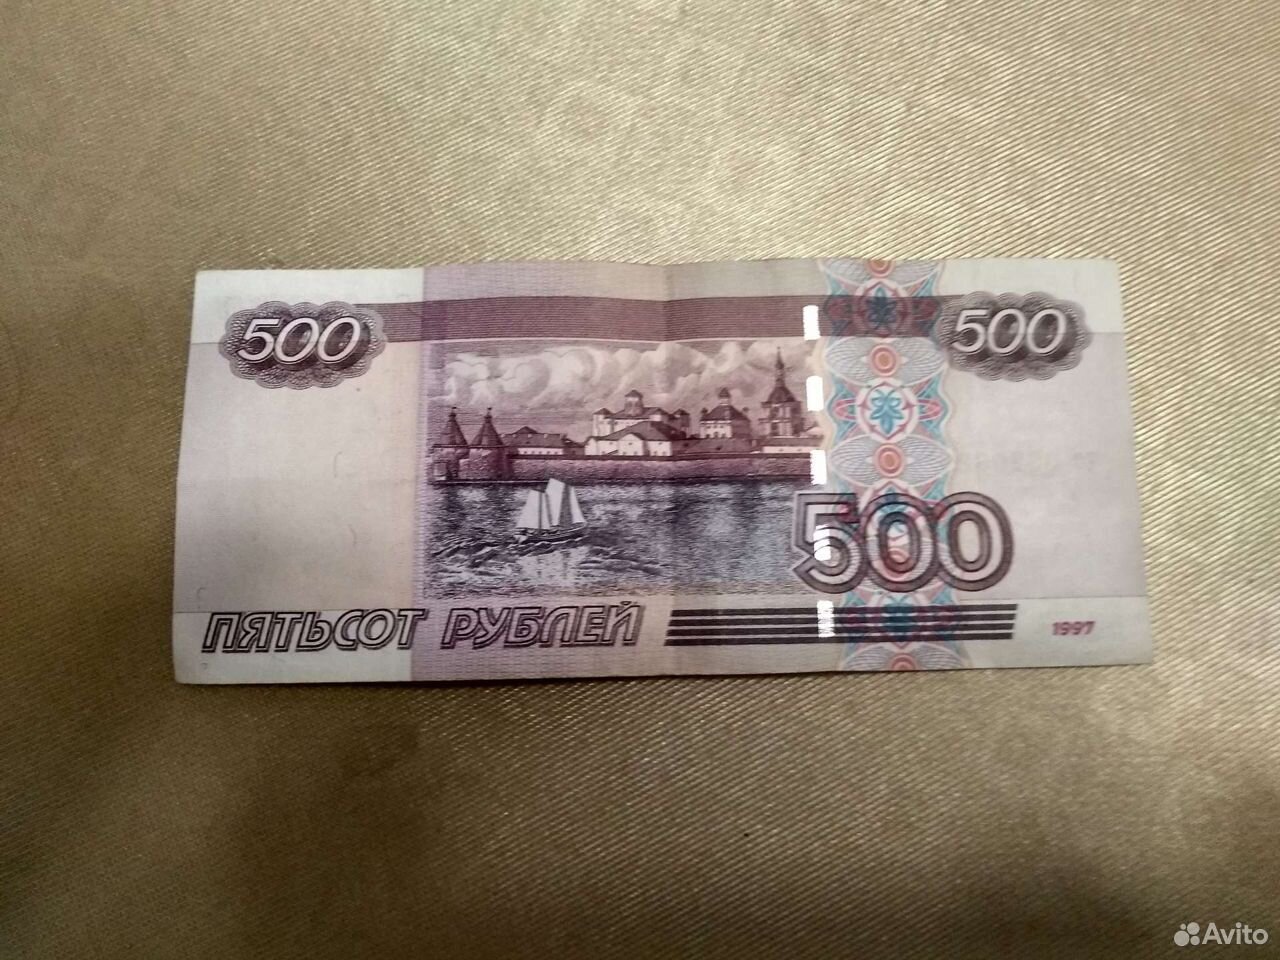 Н 500 рублей. Купюра 500 рублей. 500 Рублей. Купюра 500 рублей 1997 года. Купюра 500 рублей 1997.